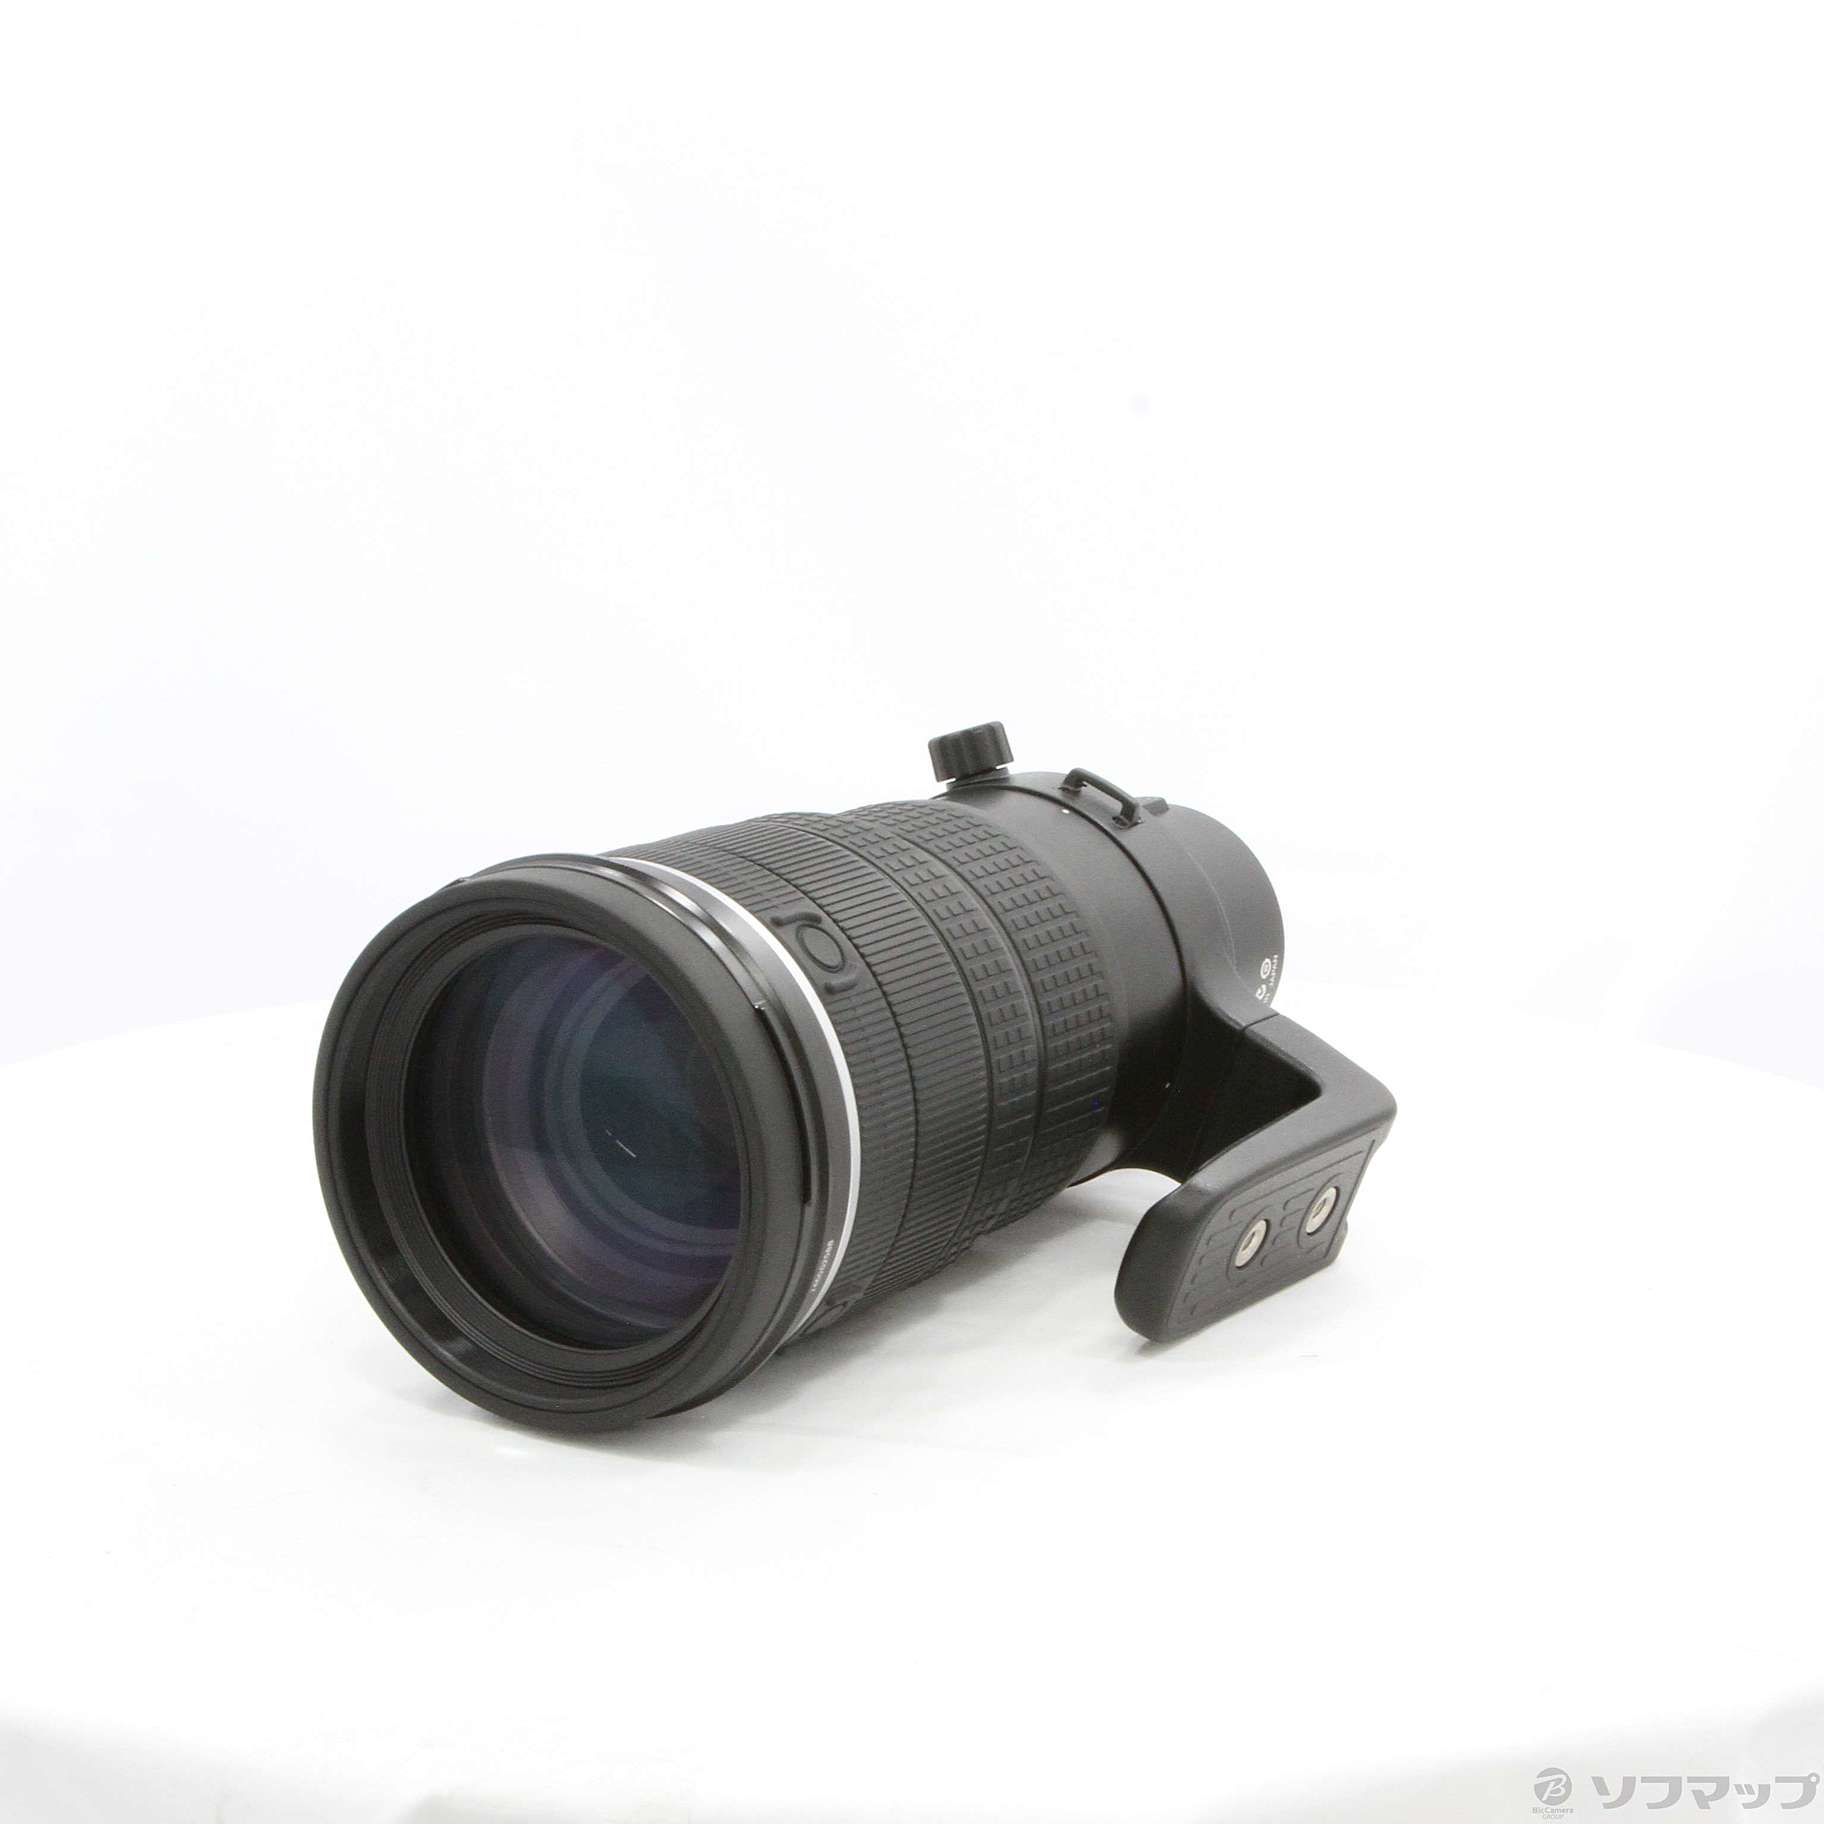 〔展示品〕〔展示品〕 ZUIKO DIGITAL ED 90-250mm F2.8 (レンズ)